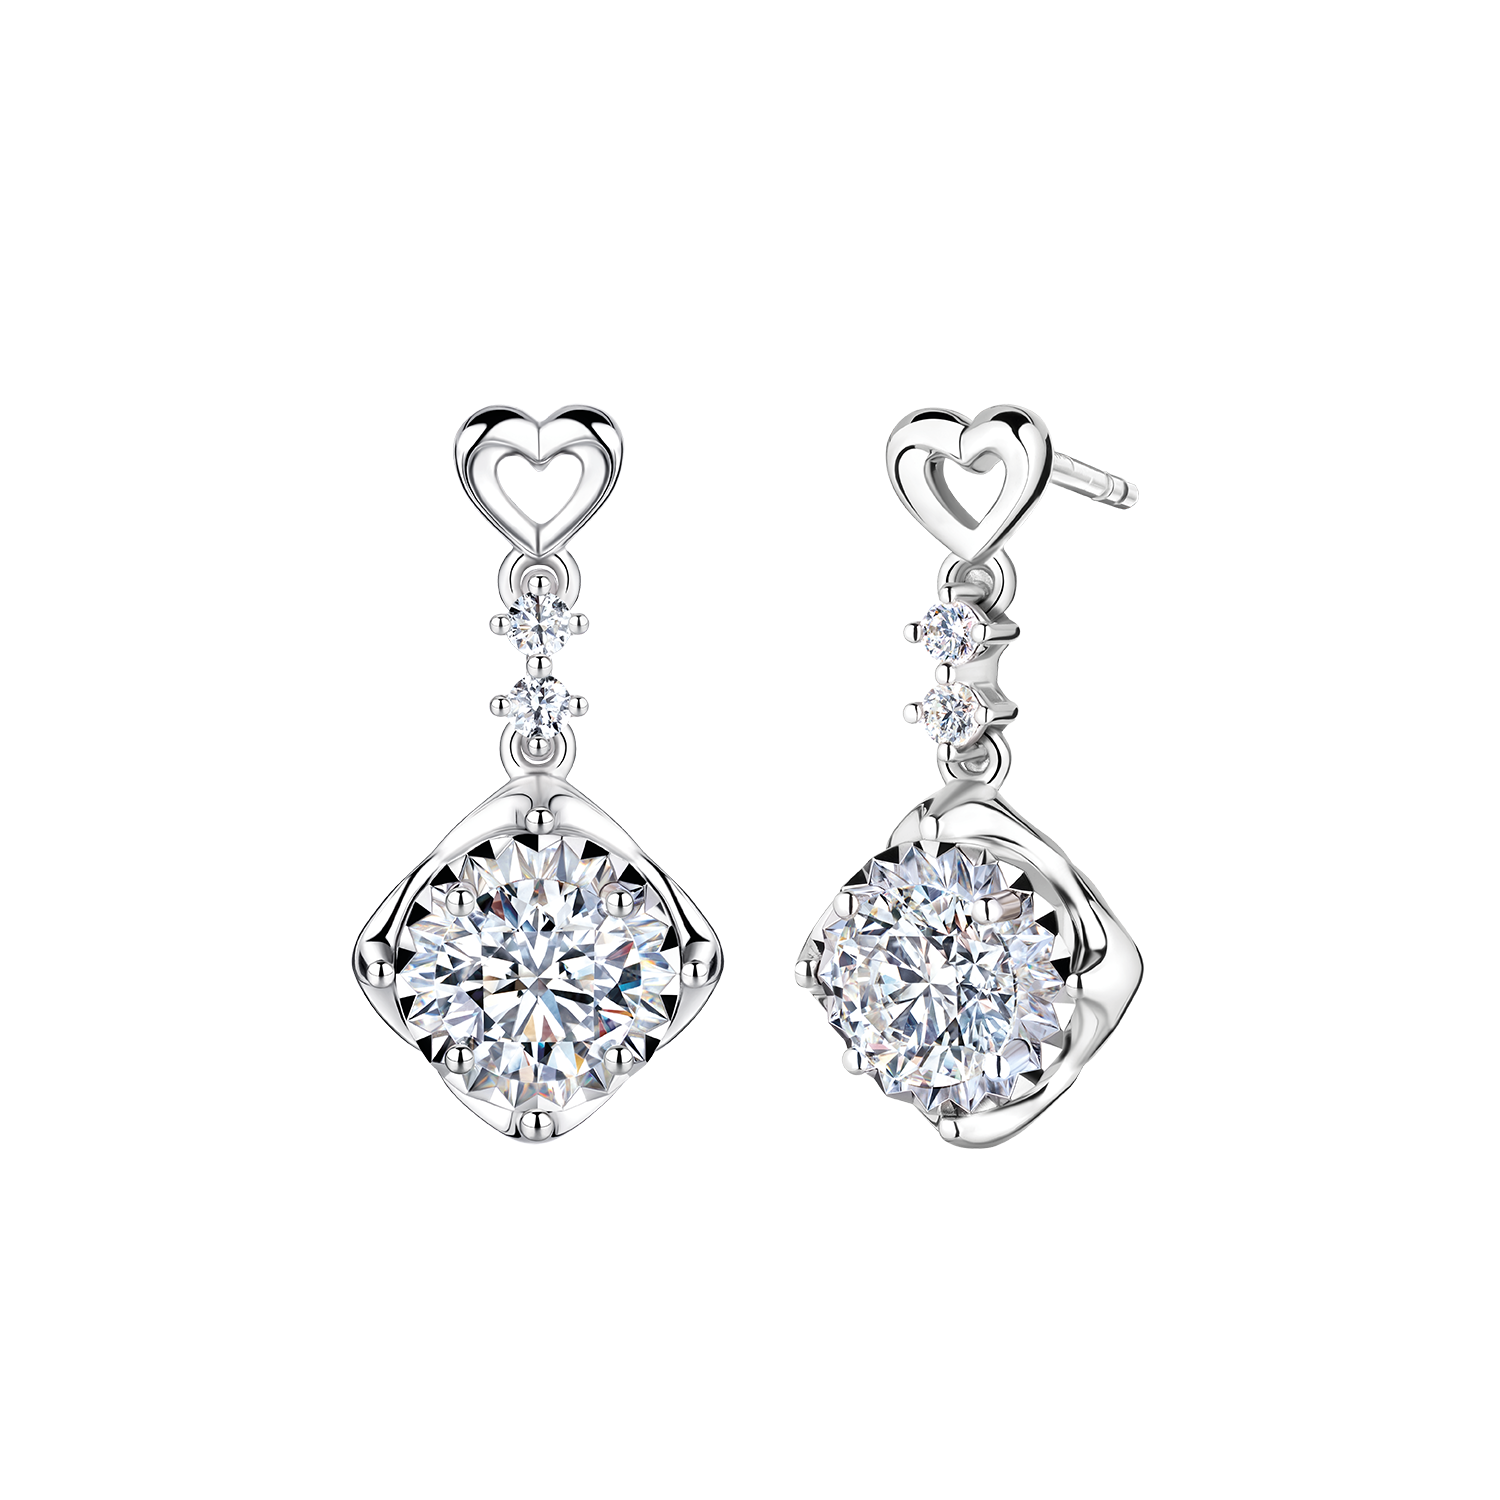 Stellar Times  Diamond wedding jewelry, Detailed jewelry, Fantasy jewelry